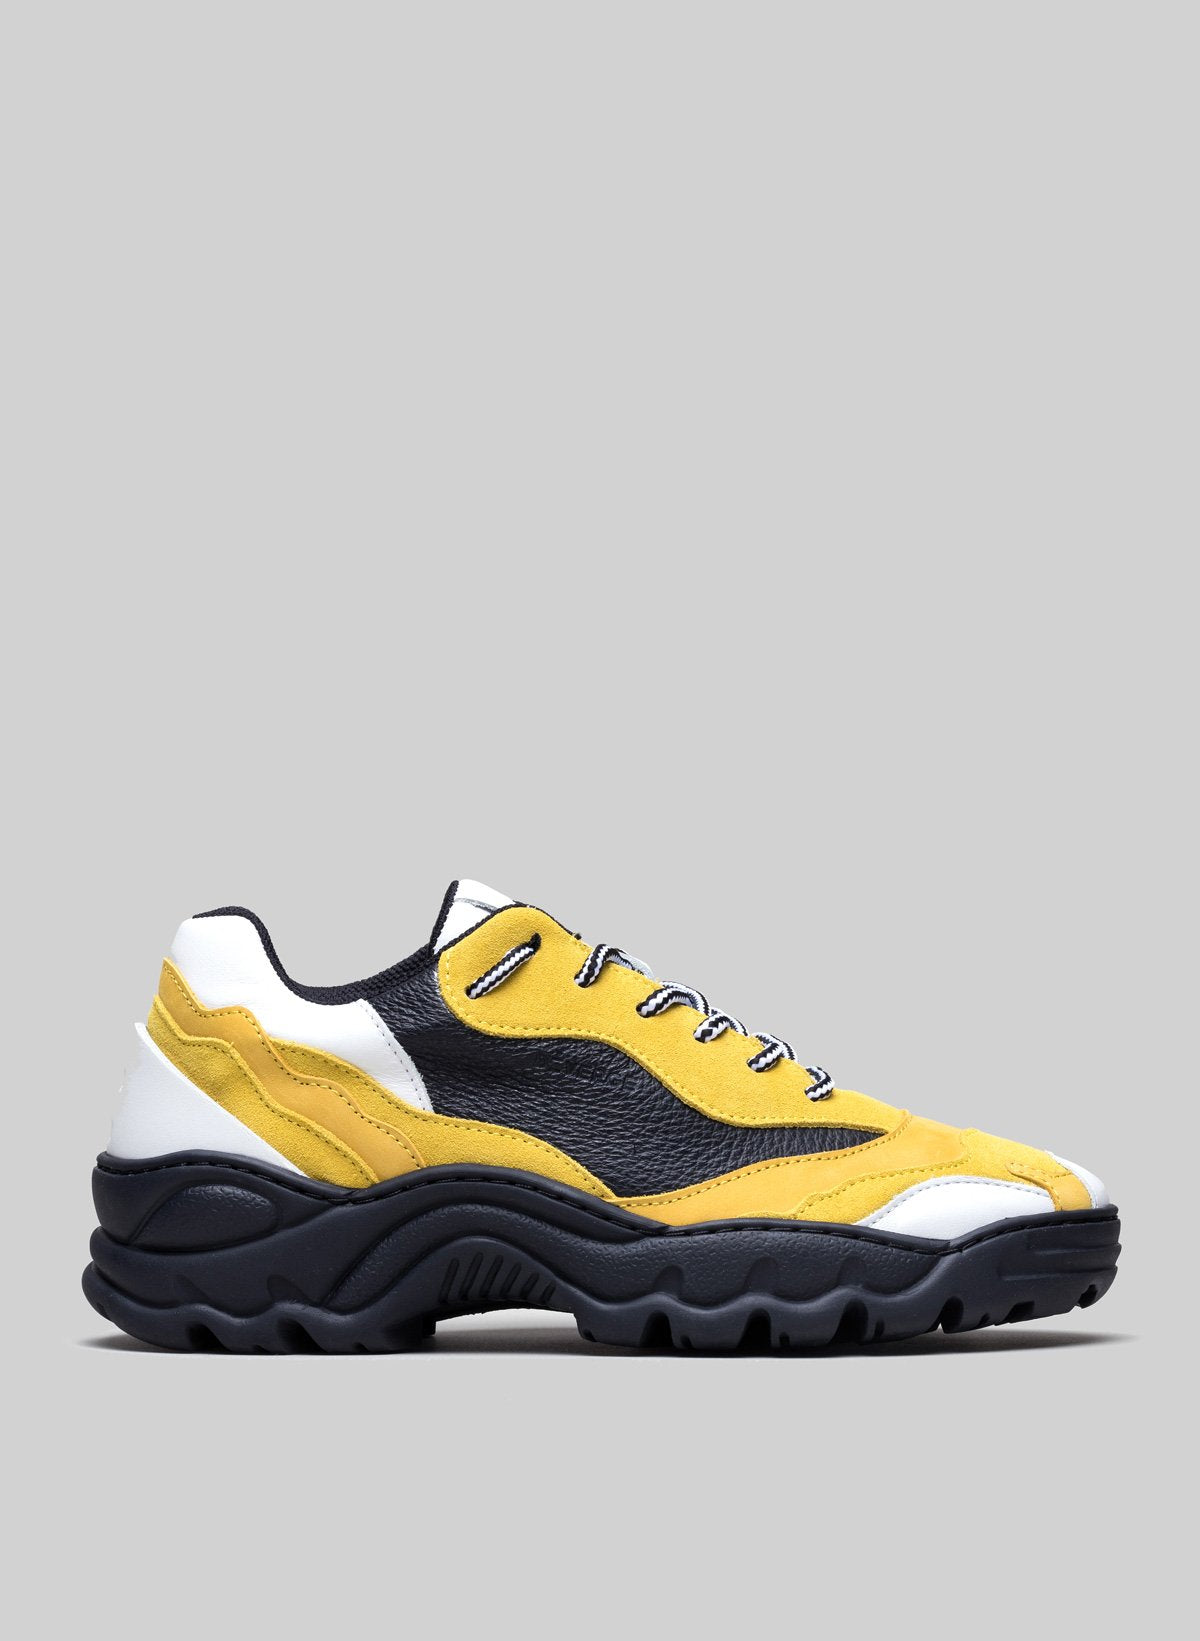 Low top amarillo y blanco sneakers con suela negra, zapatos personalizados por Diverge.